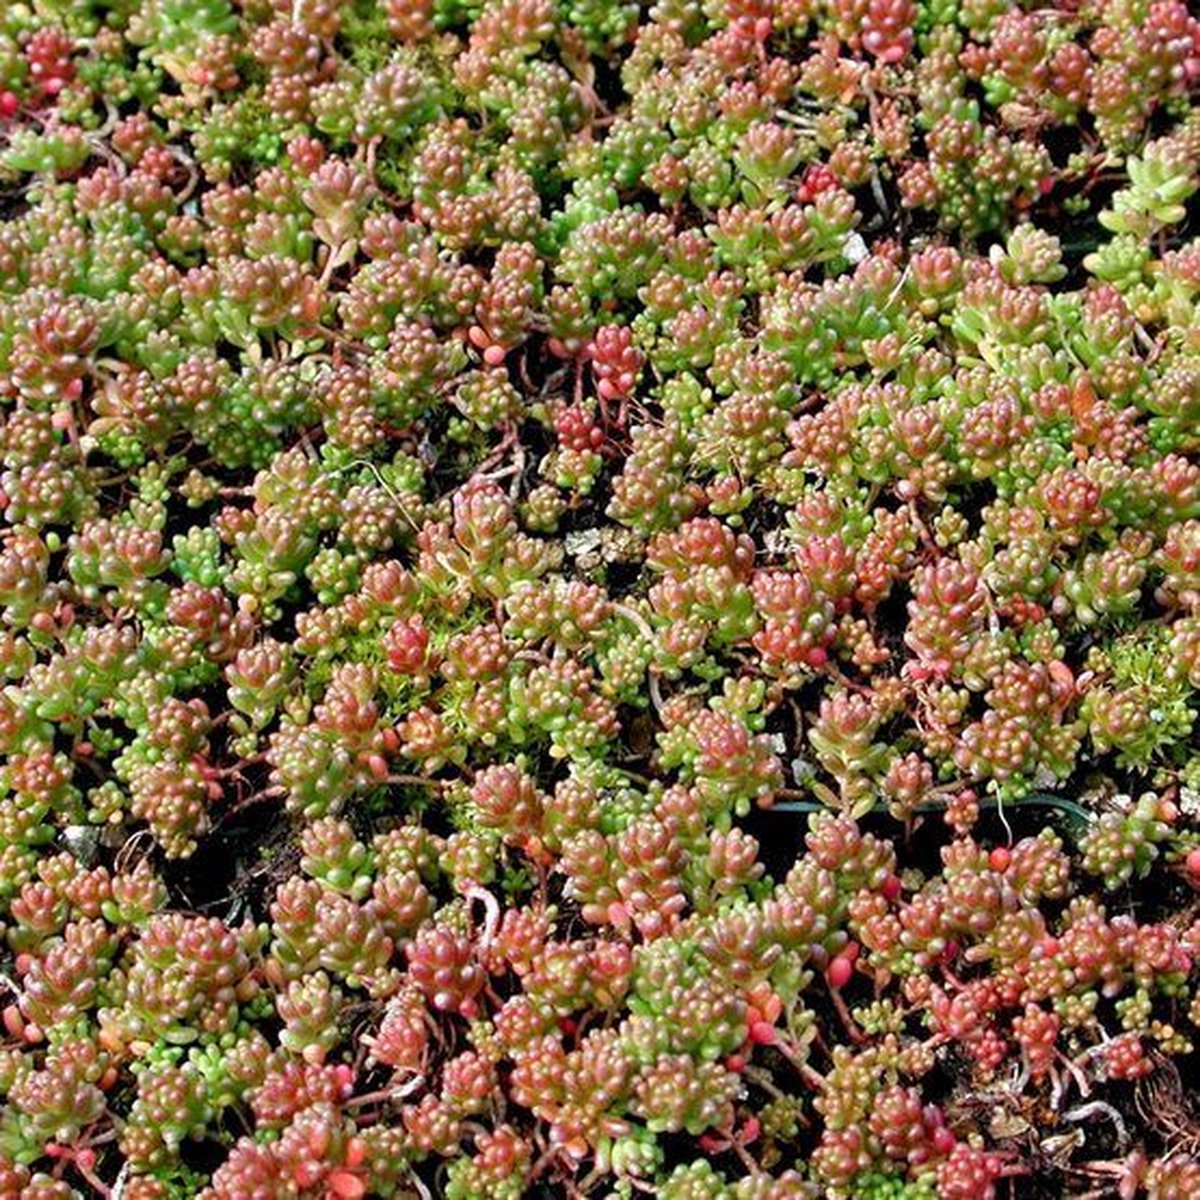 12 x Vetkruid of Muurpeper Rood|Groen - Bodembedekker Wintergroen - Sedum album 'Coral Carpet' in 9x9cm pot met hoogte 5-10cm